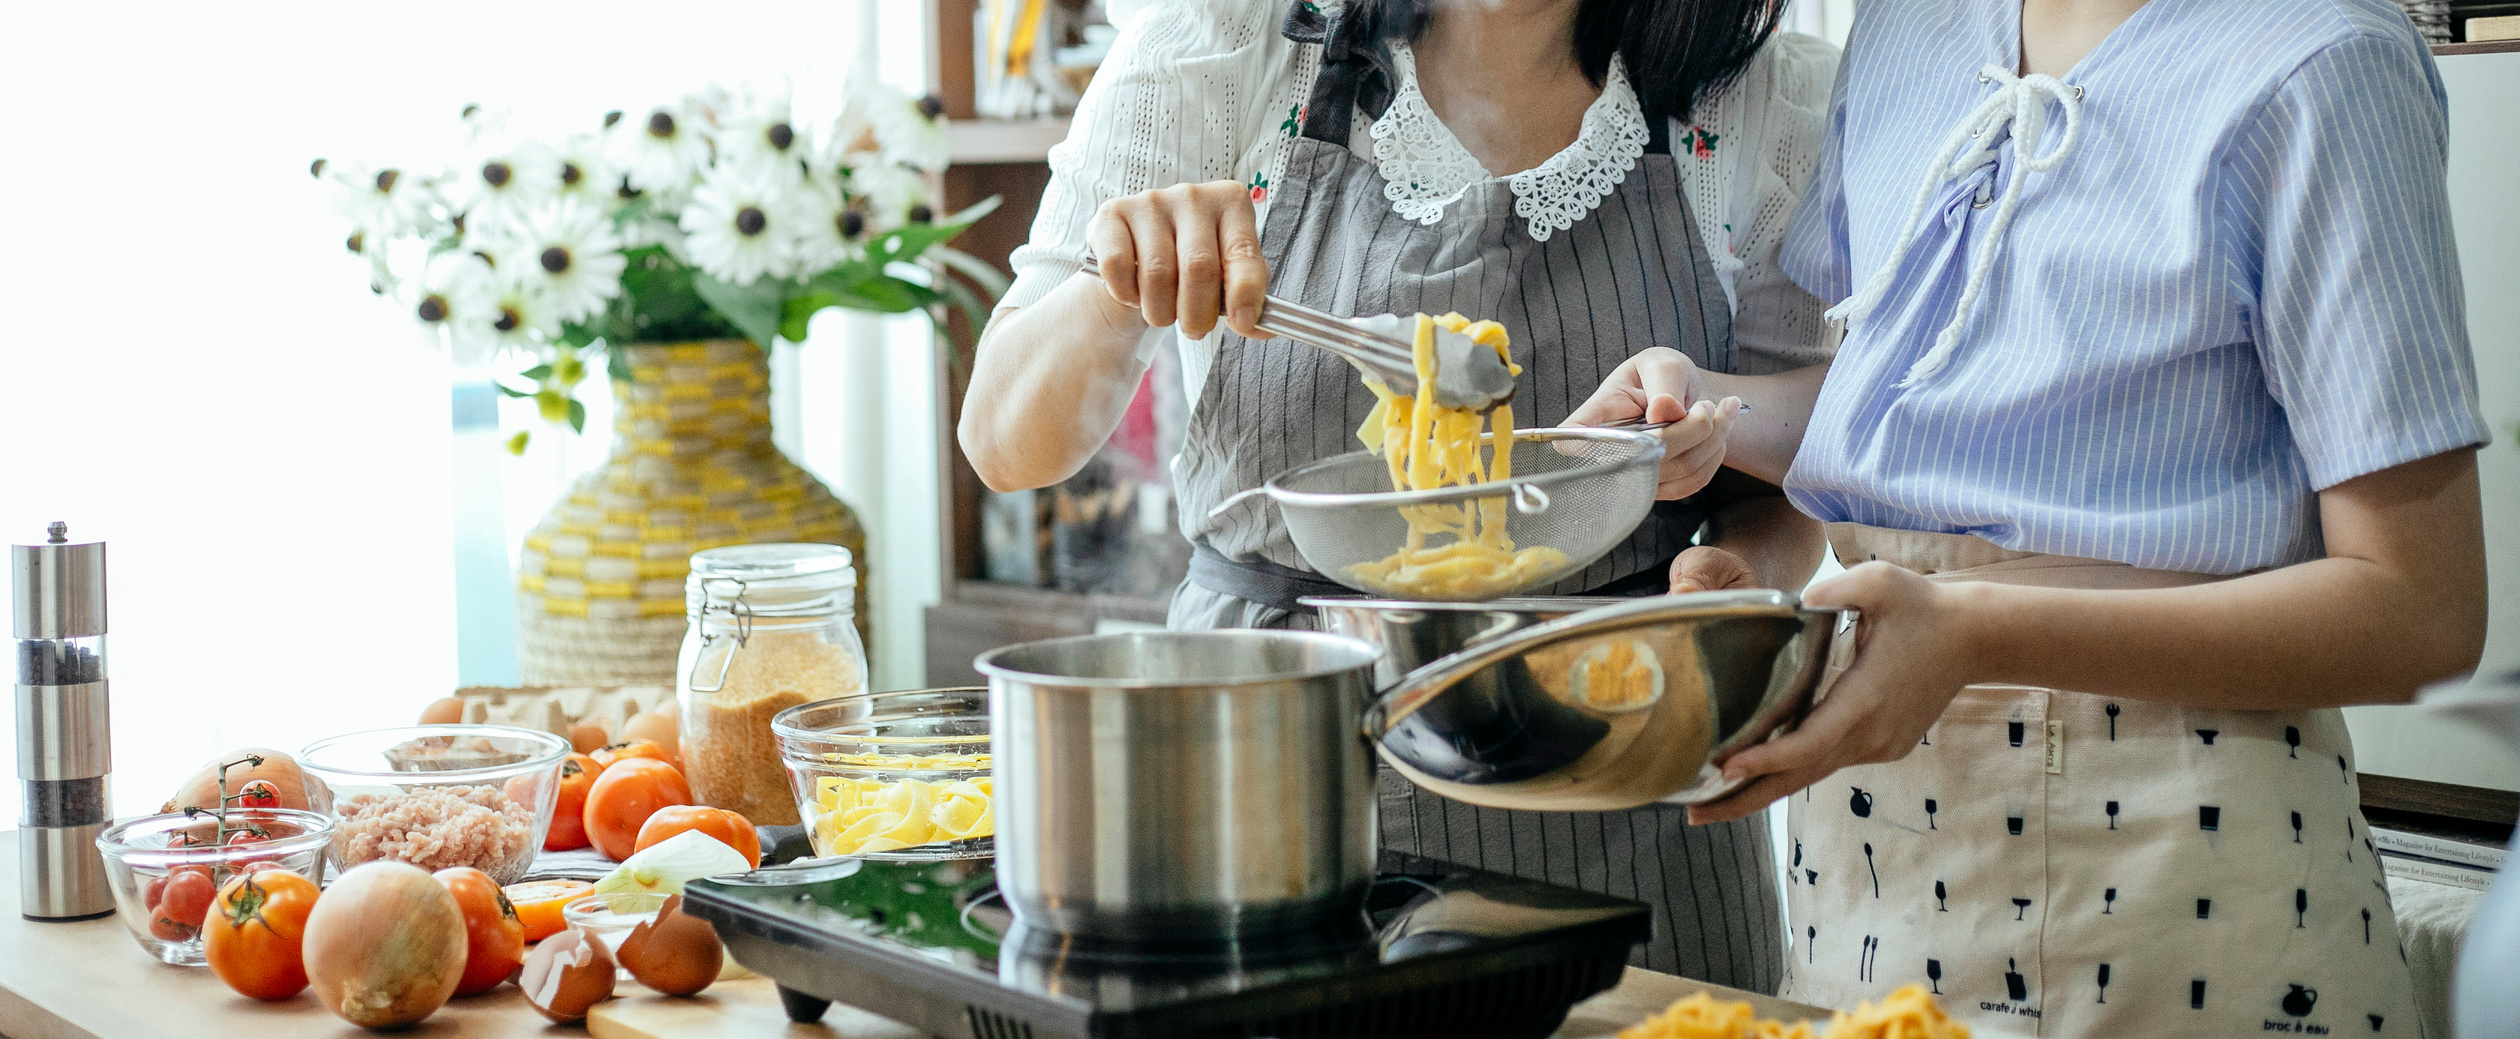 Crop women cooking pasta in kitchen